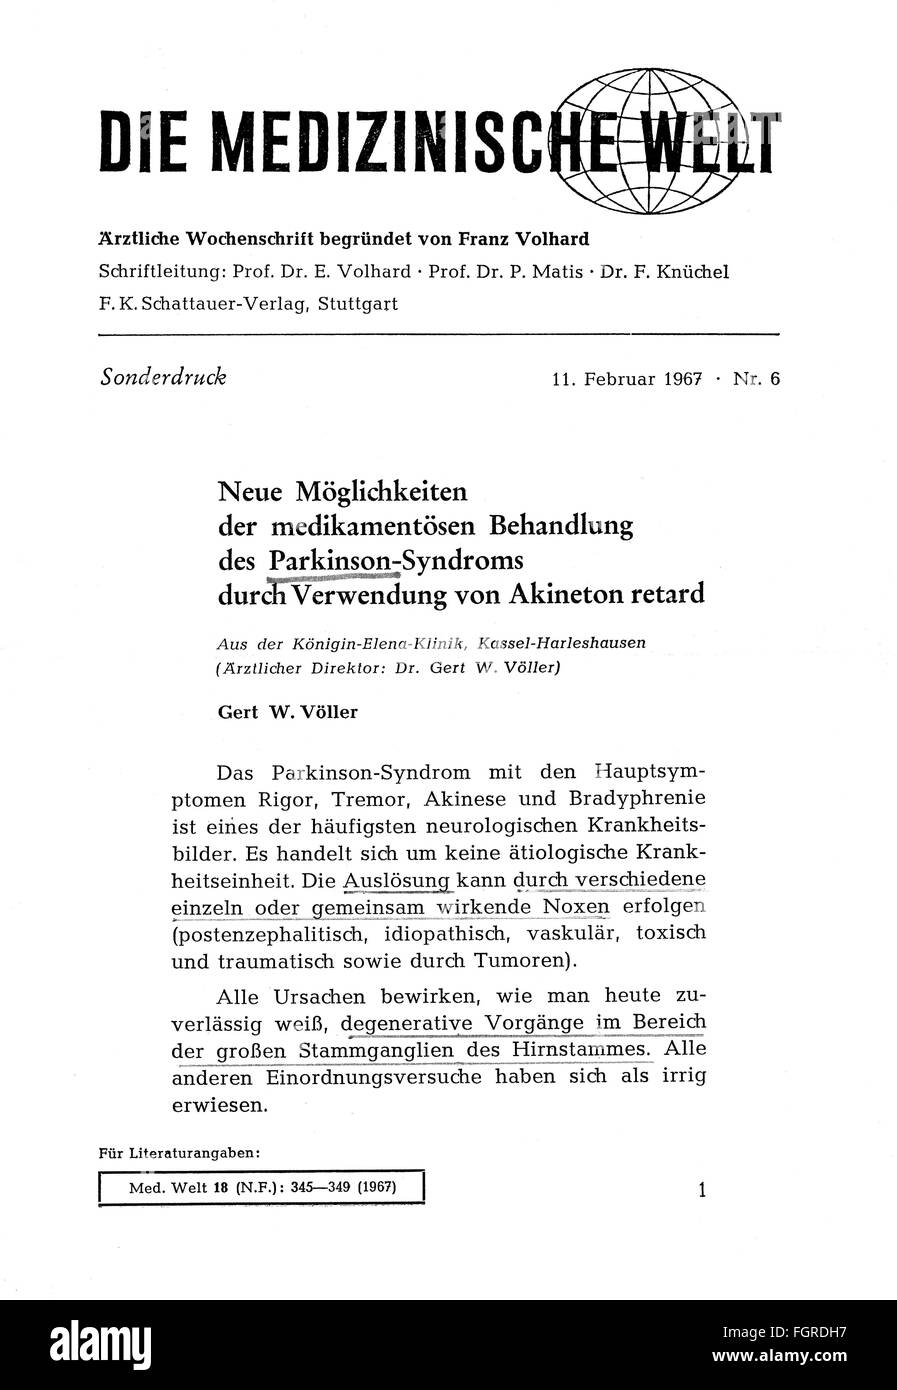 Stampa / media, riviste, 'Die medizinische Welt', edizione speciale, numero 6, titolo, Stoccarda, 11.2.1967, diritti aggiuntivi-clearences-non disponibile Foto Stock